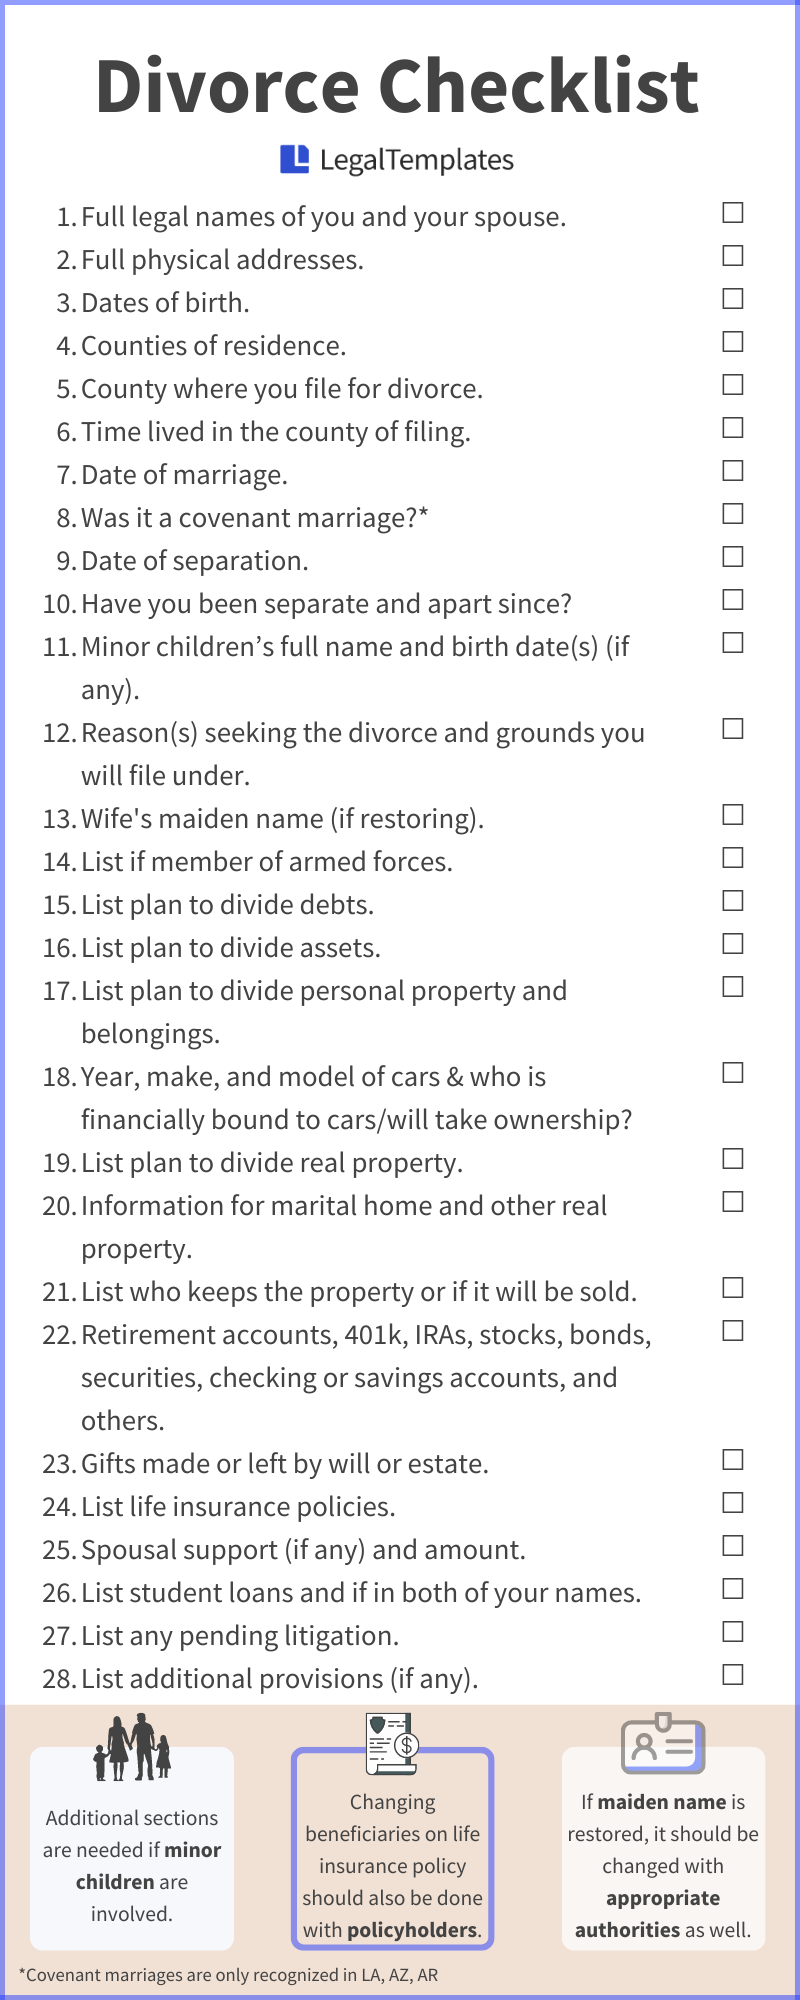 divorce checklist infographic